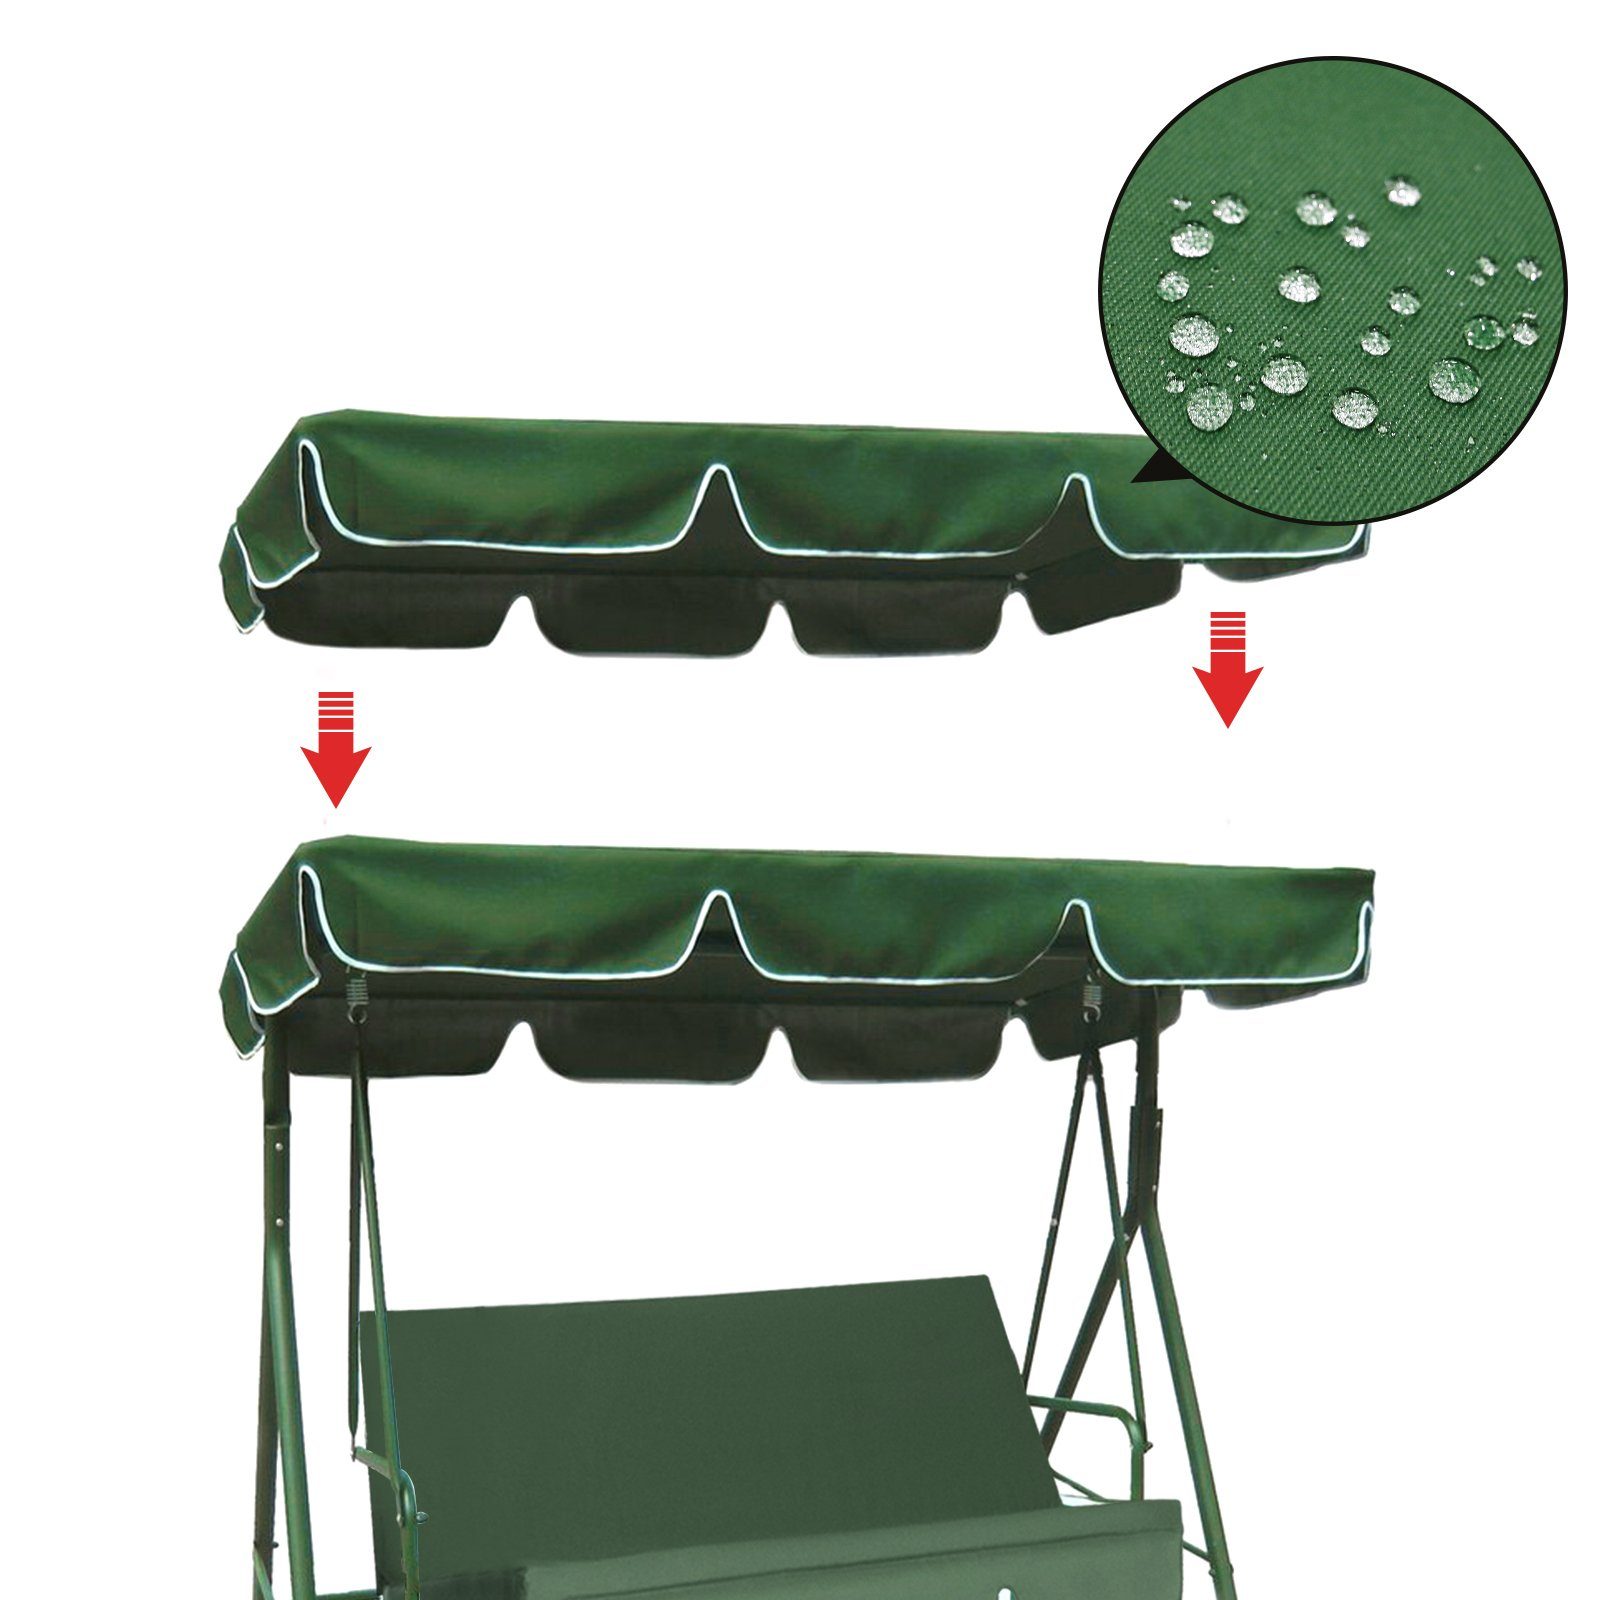 Rosnek Gartenmöbel-Schutzhülle Wasserdicht, Oxford-Stoff, für Patio Swing und Hängesessel im Freien, Sitzbezug & Überdachung Grün